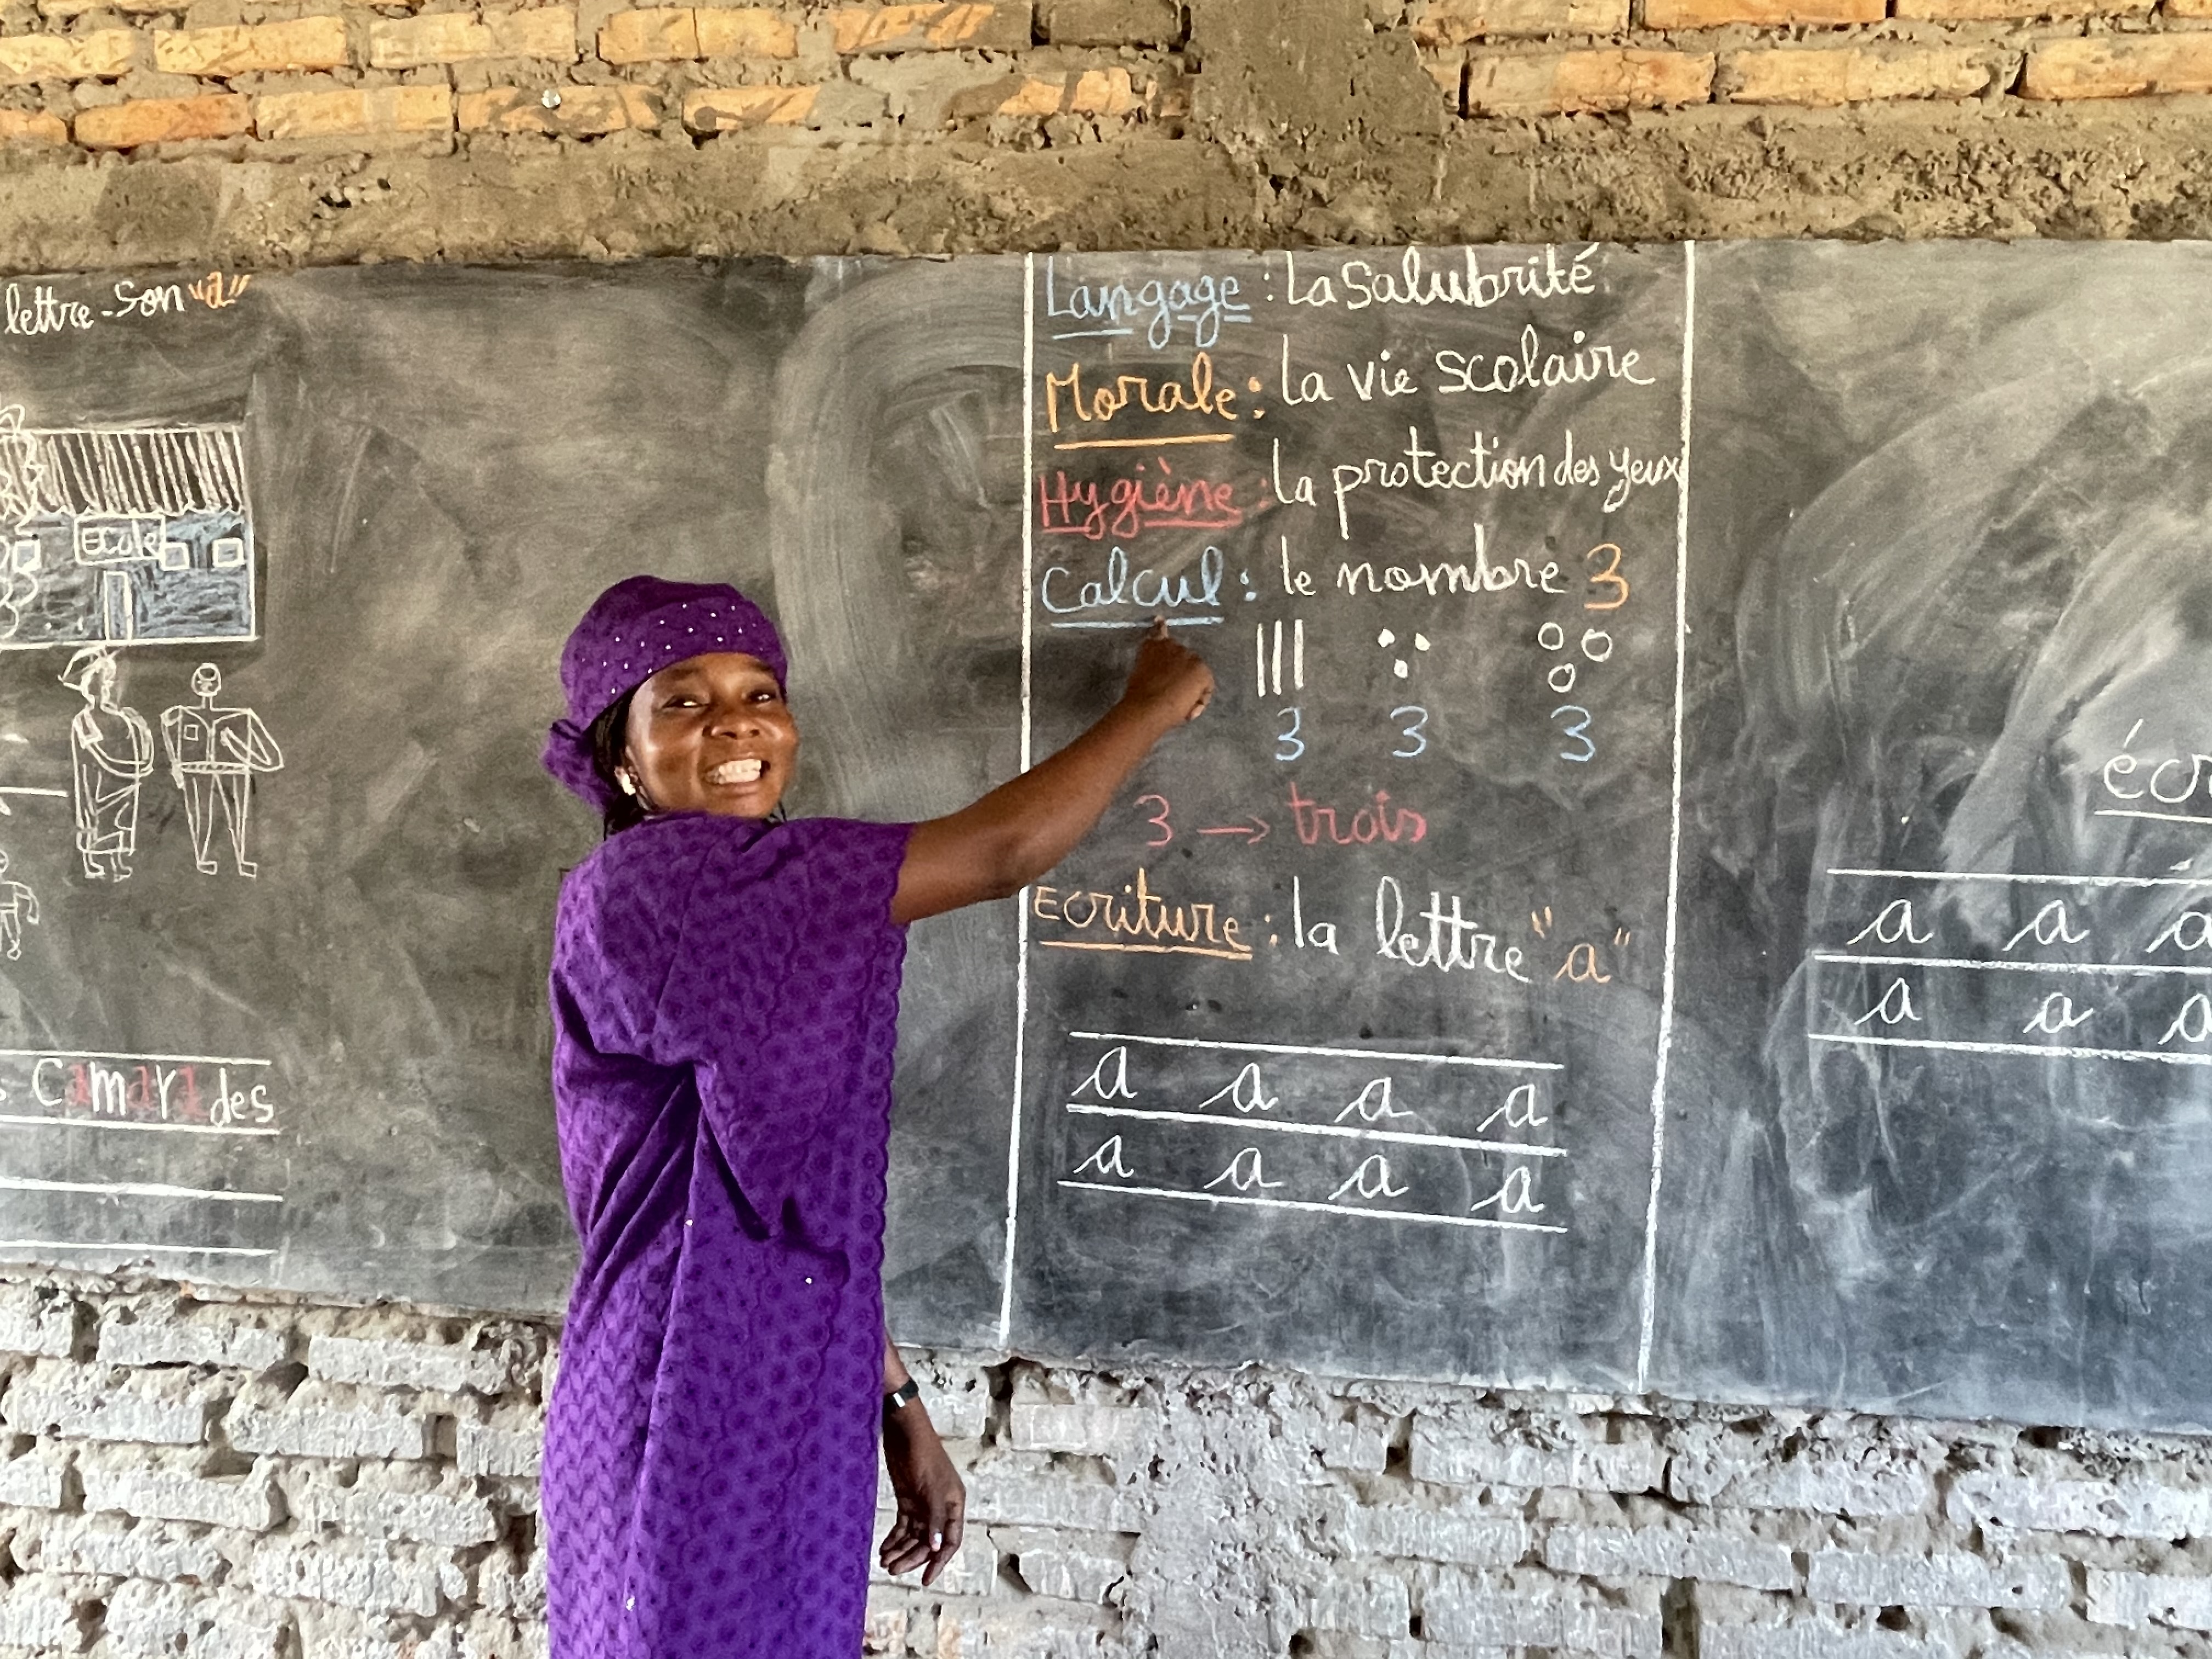 Strengthening Teaching in the Sahel Region